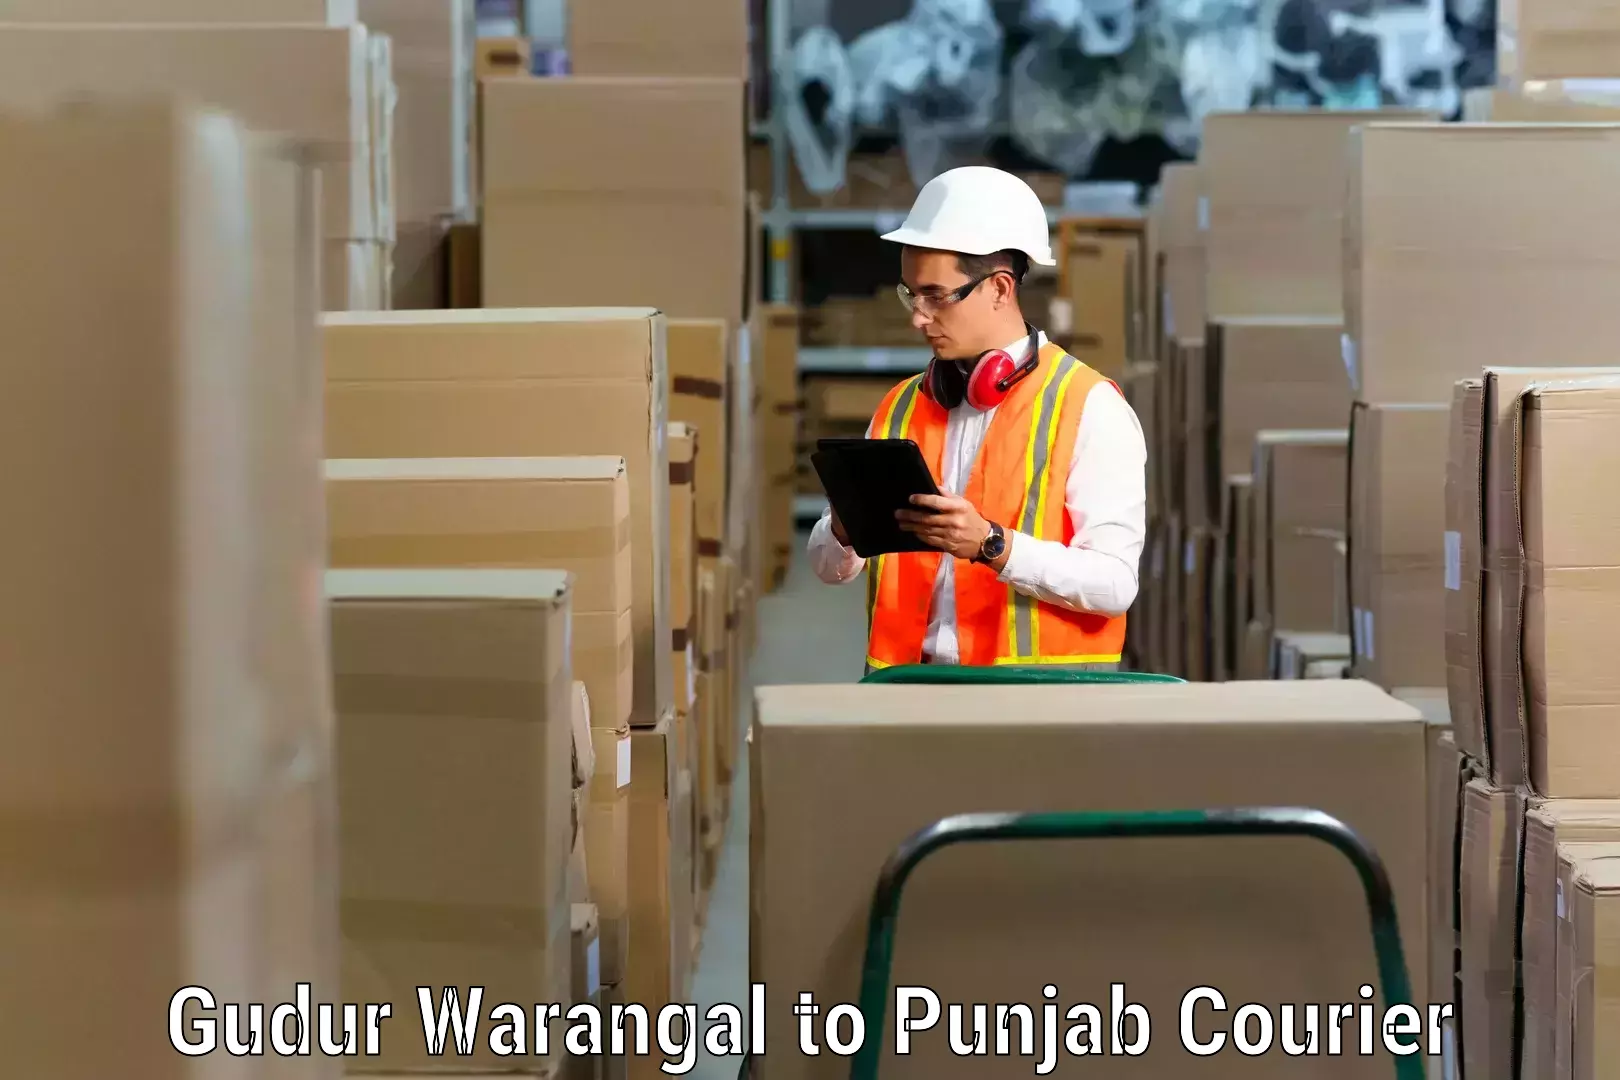 Household shifting services Gudur Warangal to Punjab